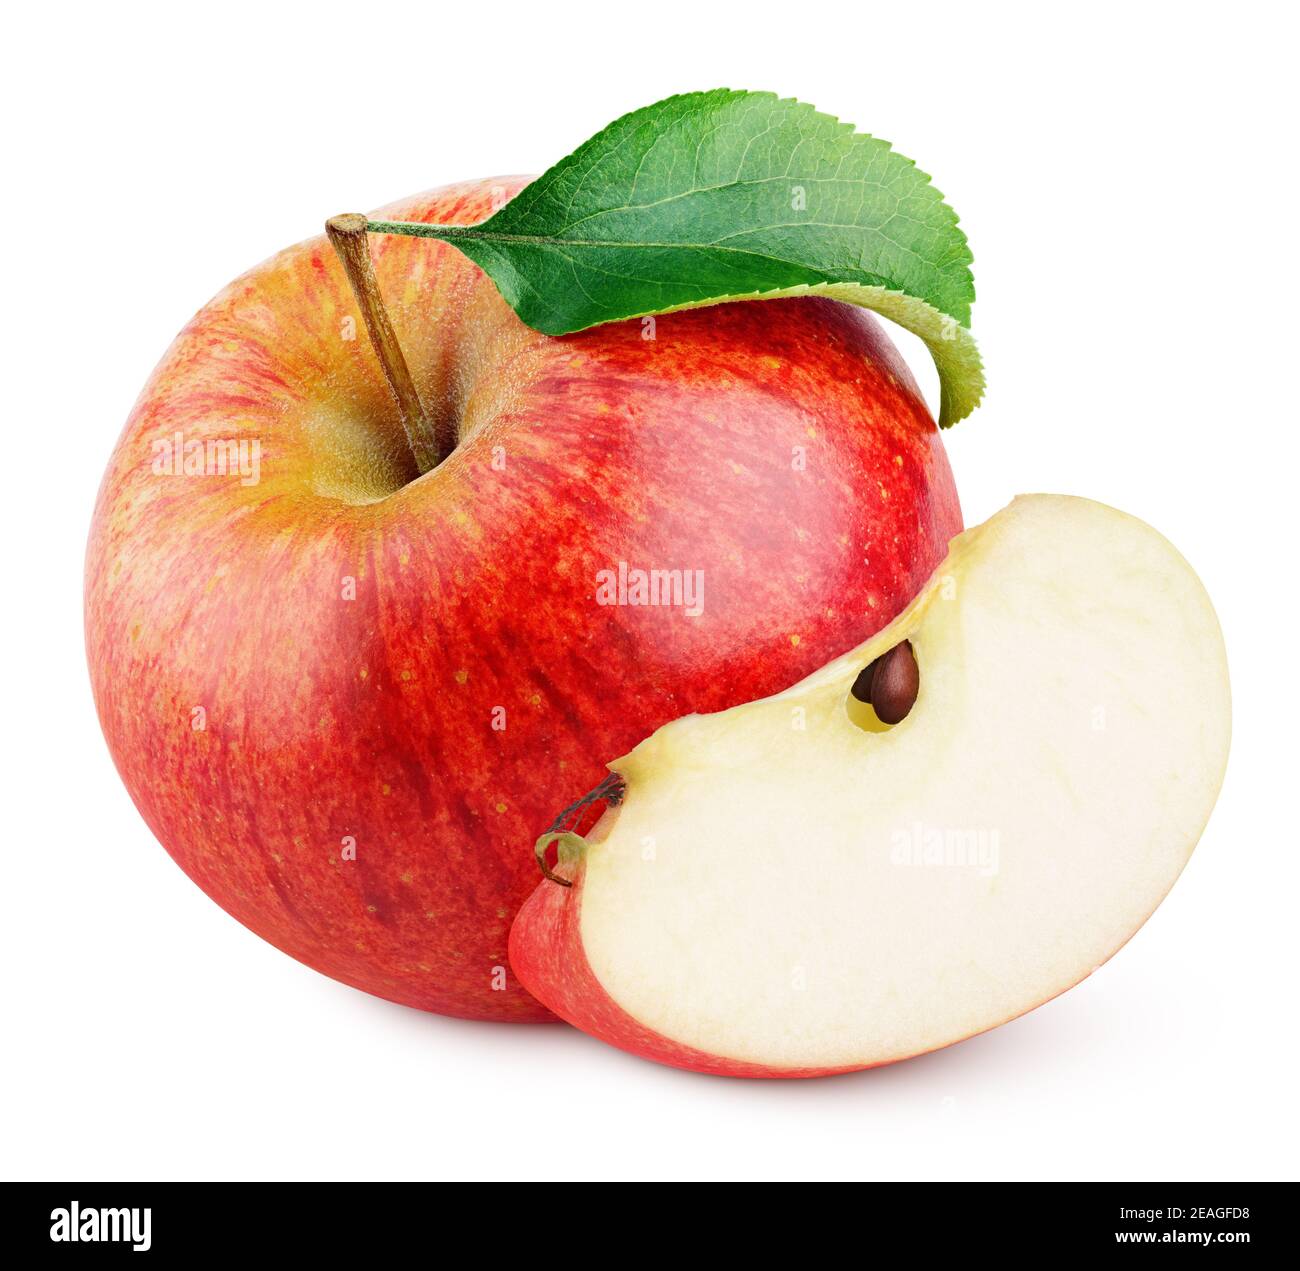 Mela rossa matura con fetta di mela e foglia verde isolato su sfondo bianco con tracciato di ritaglio Foto Stock